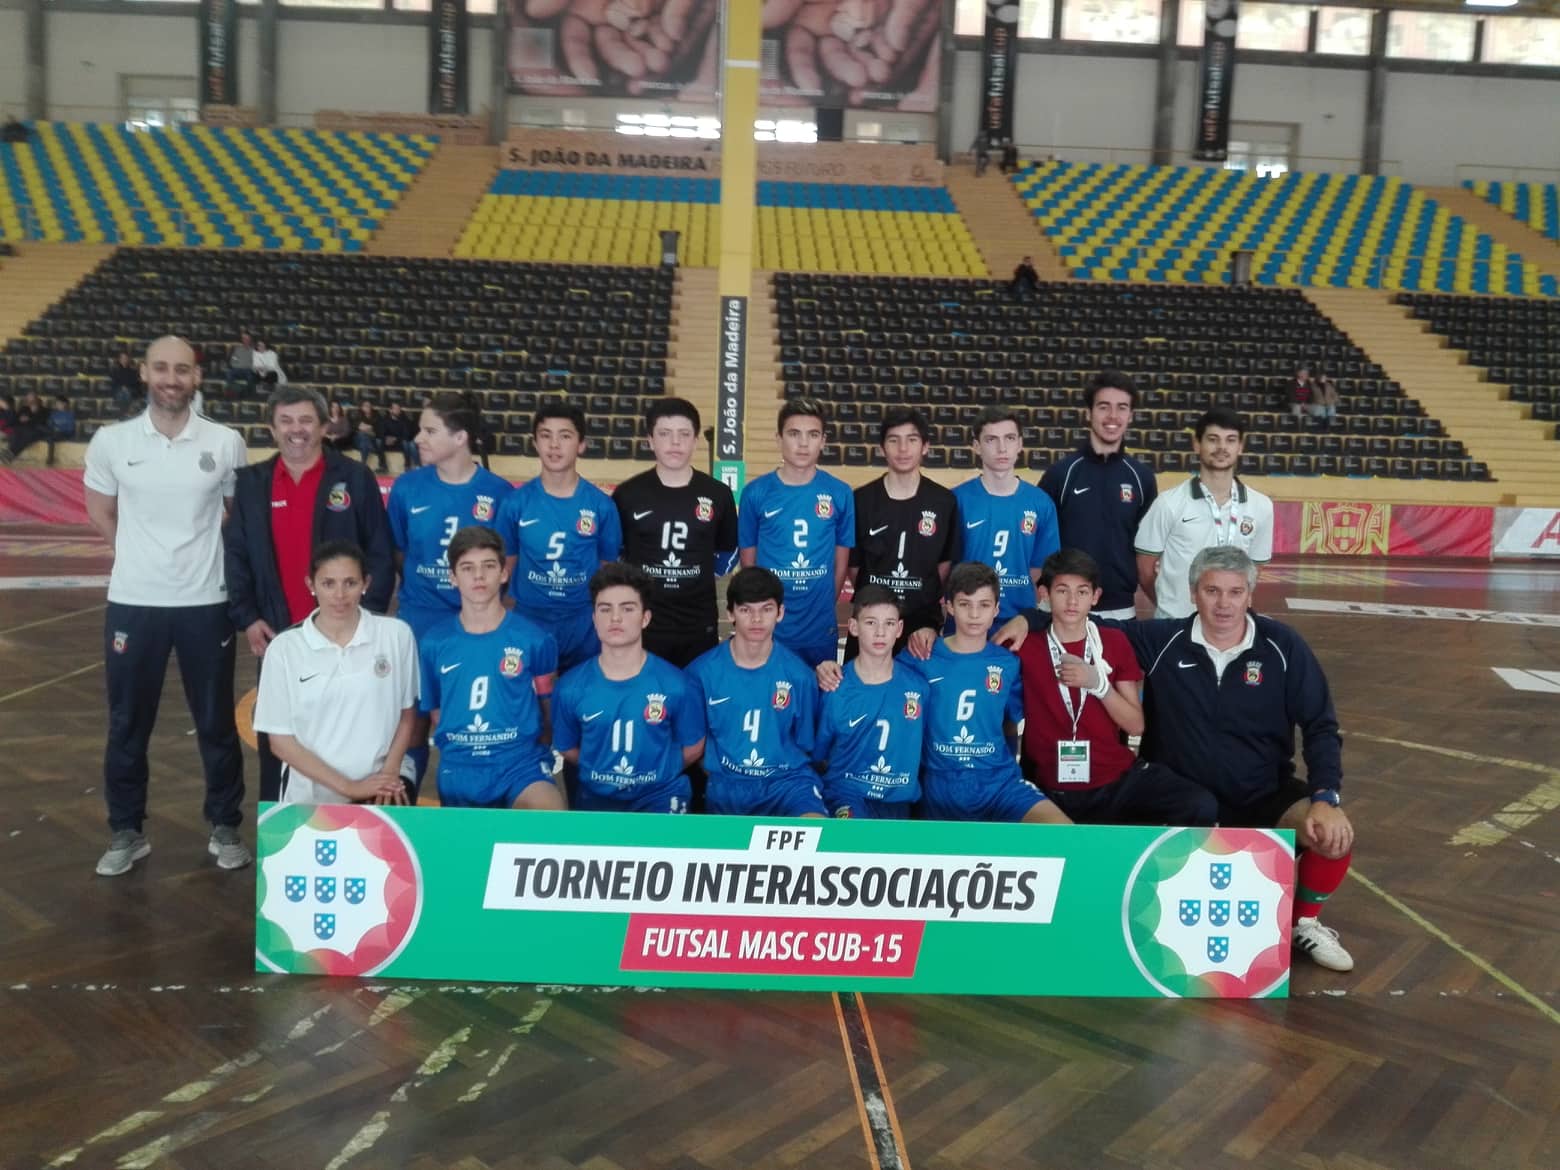 No Interassociações Sub-15 Futsal Masculino ÉVORA VENCE VIANA DO CASTELO E TERMINA TORNEIO SÓ COM VITÓRIAS